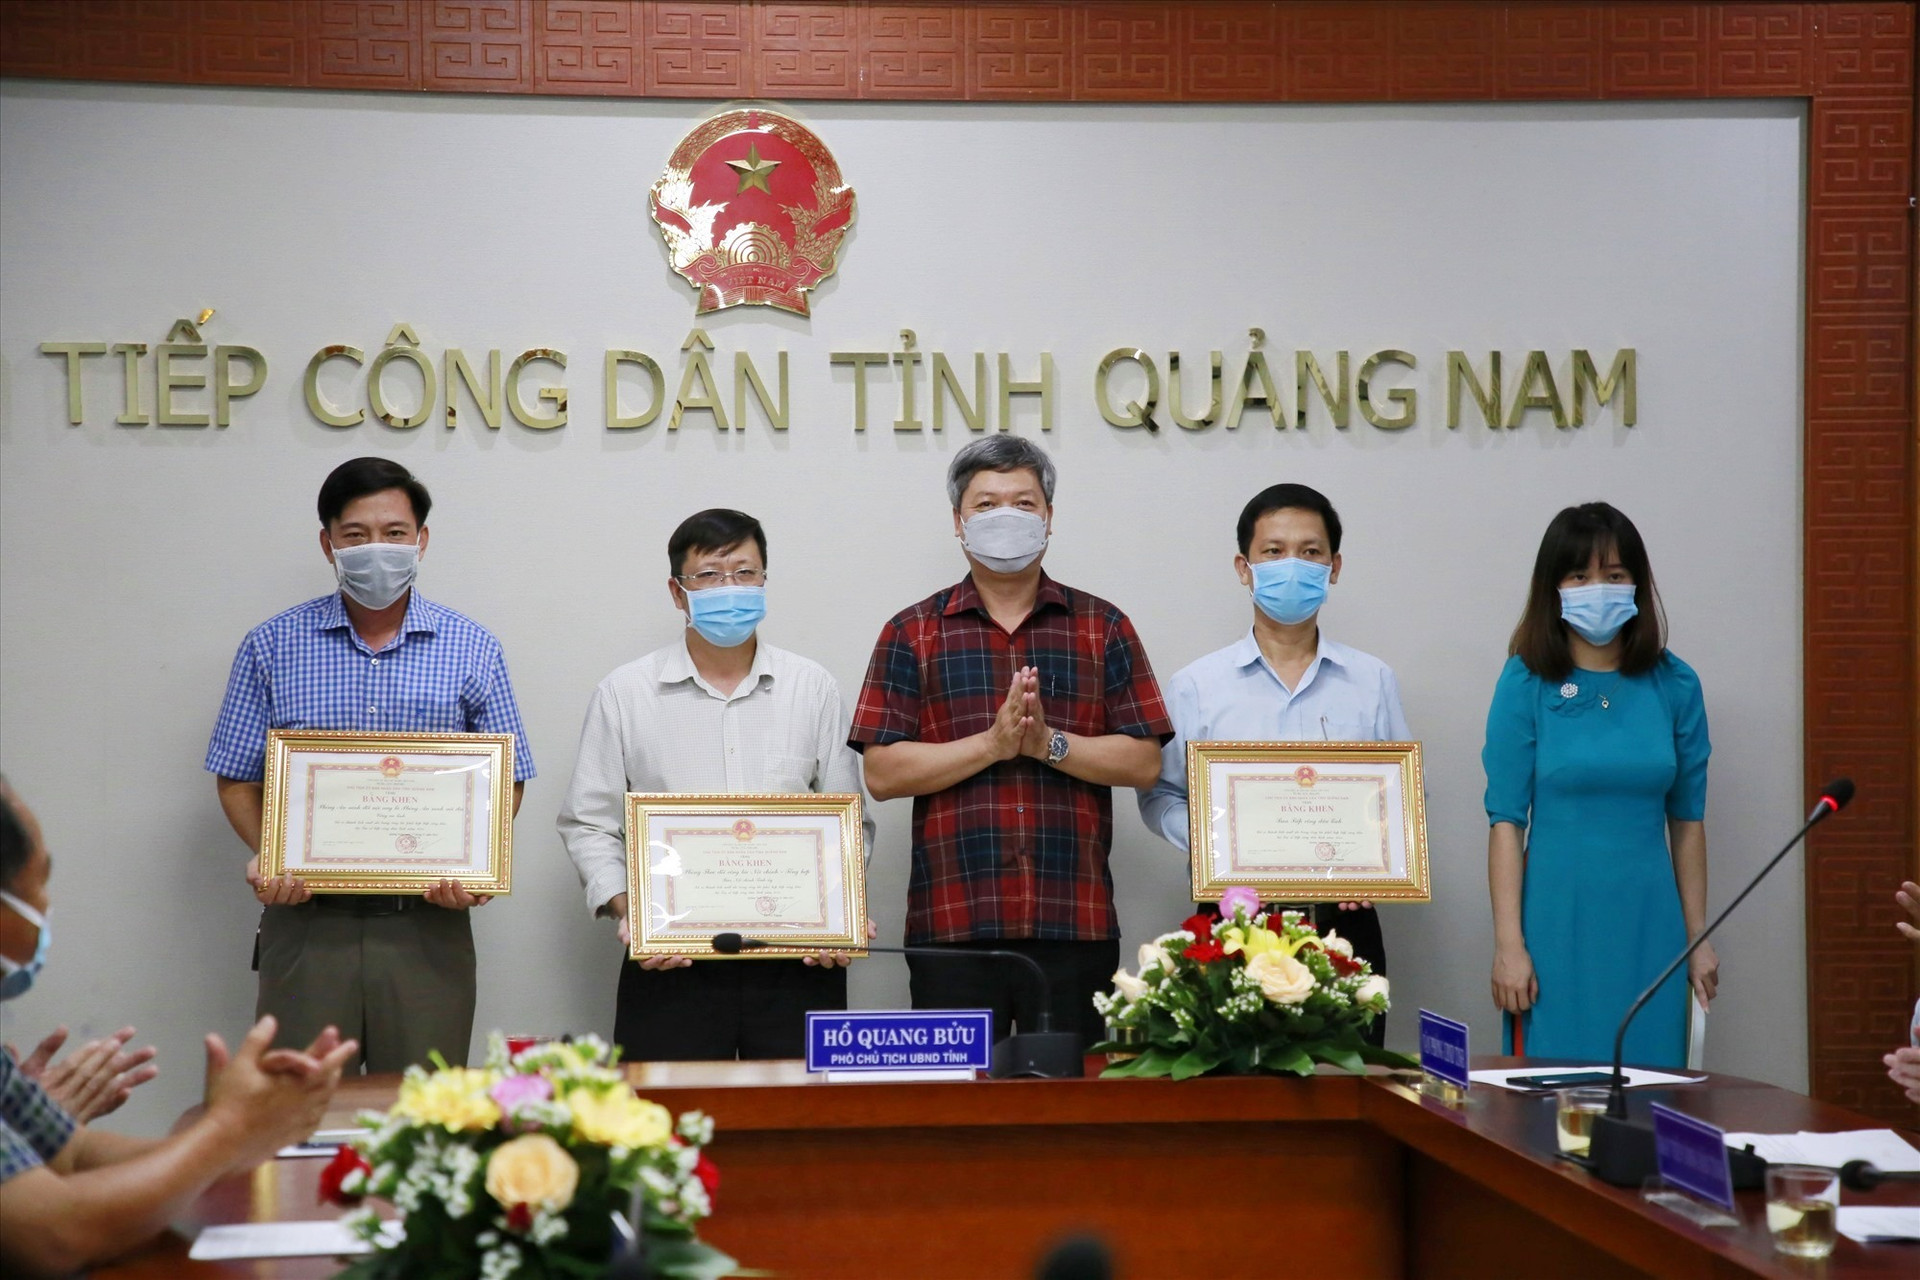 Phó Chủ tịch UBND tỉnh Hồ Quang Bửu trao bằng khen cho các tập thể có nhiều đóng góp cho công tác tiếp công dân.